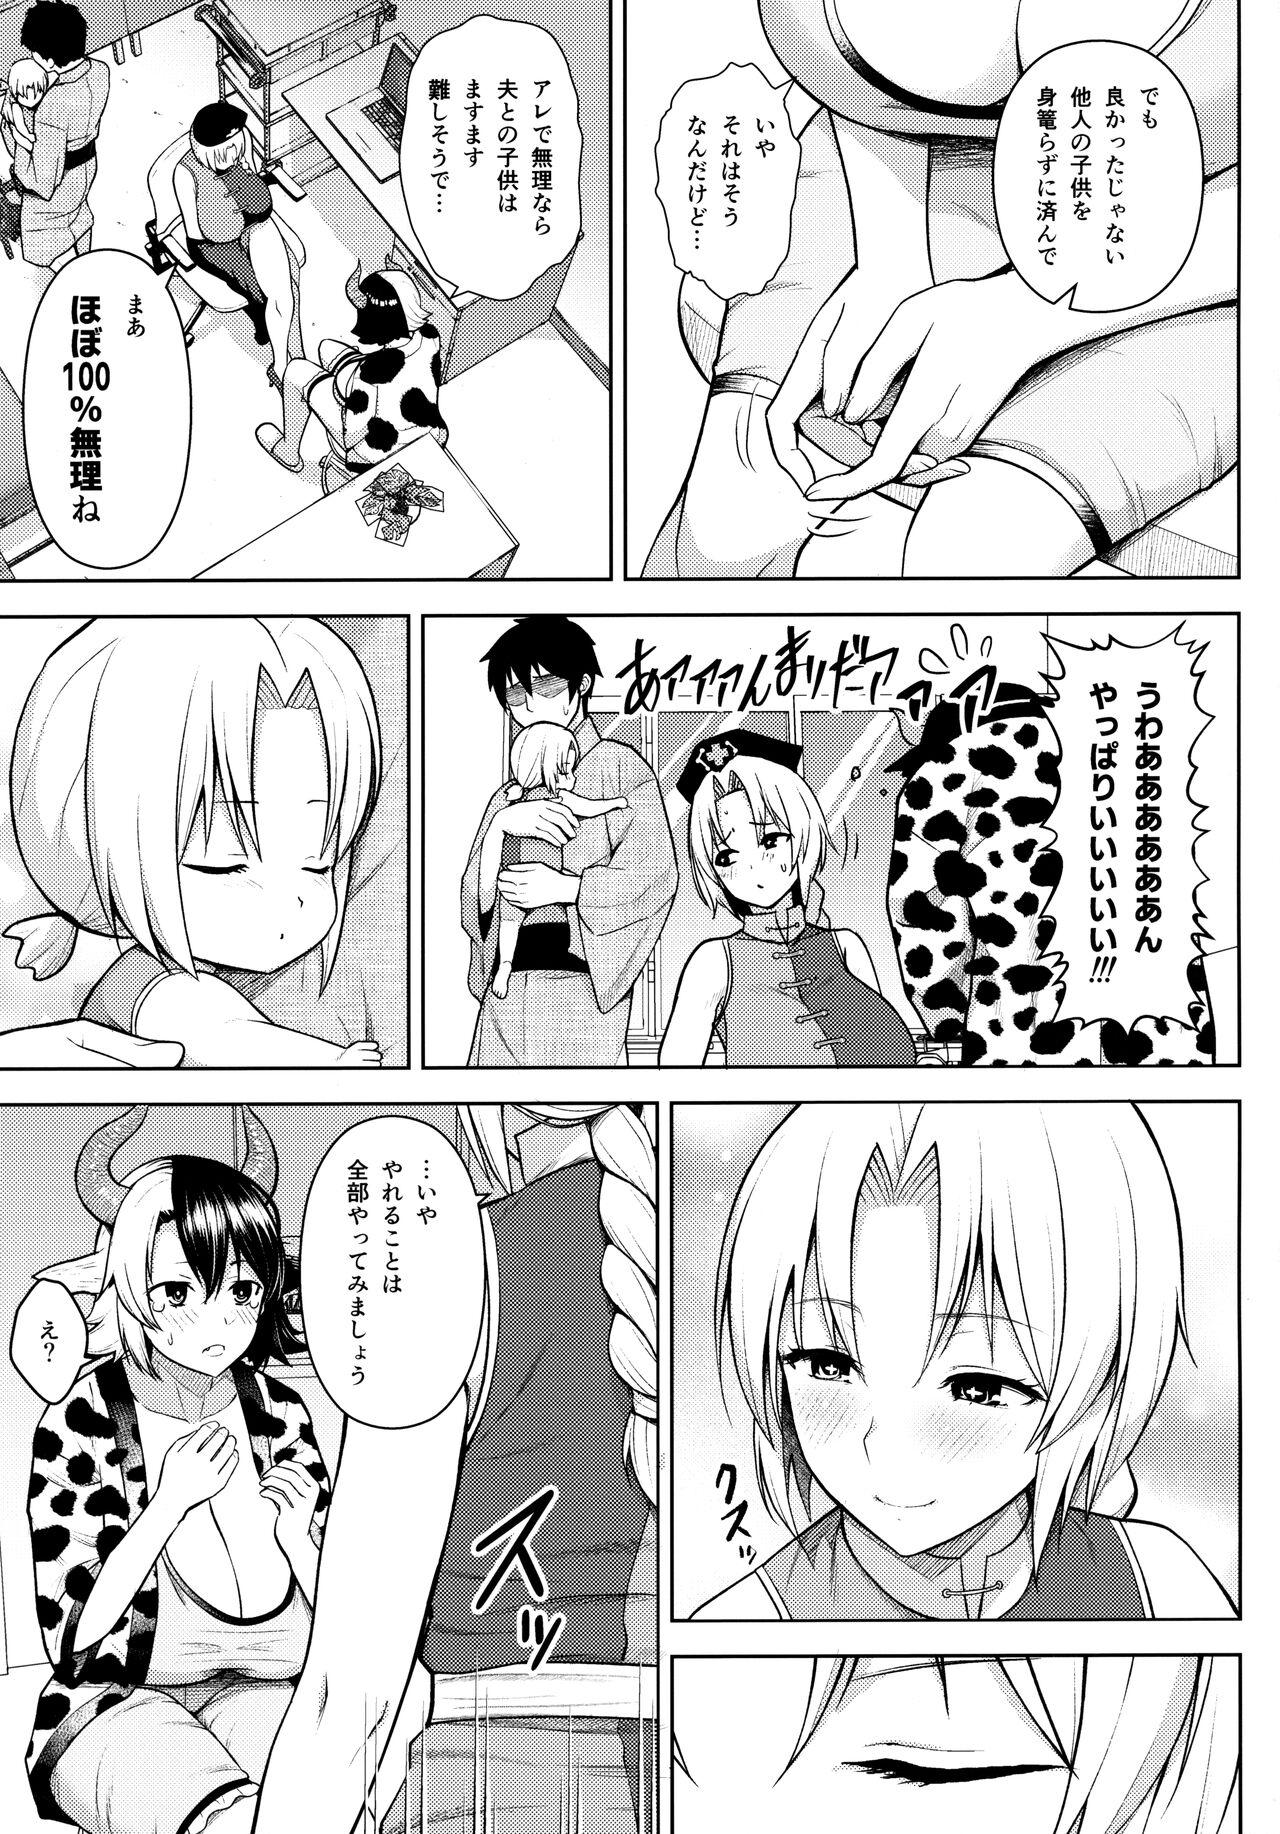 3some Oku-san no Oppai ga Dekasugiru no ga Warui! 4 - Touhou project Amatuer - Page 4